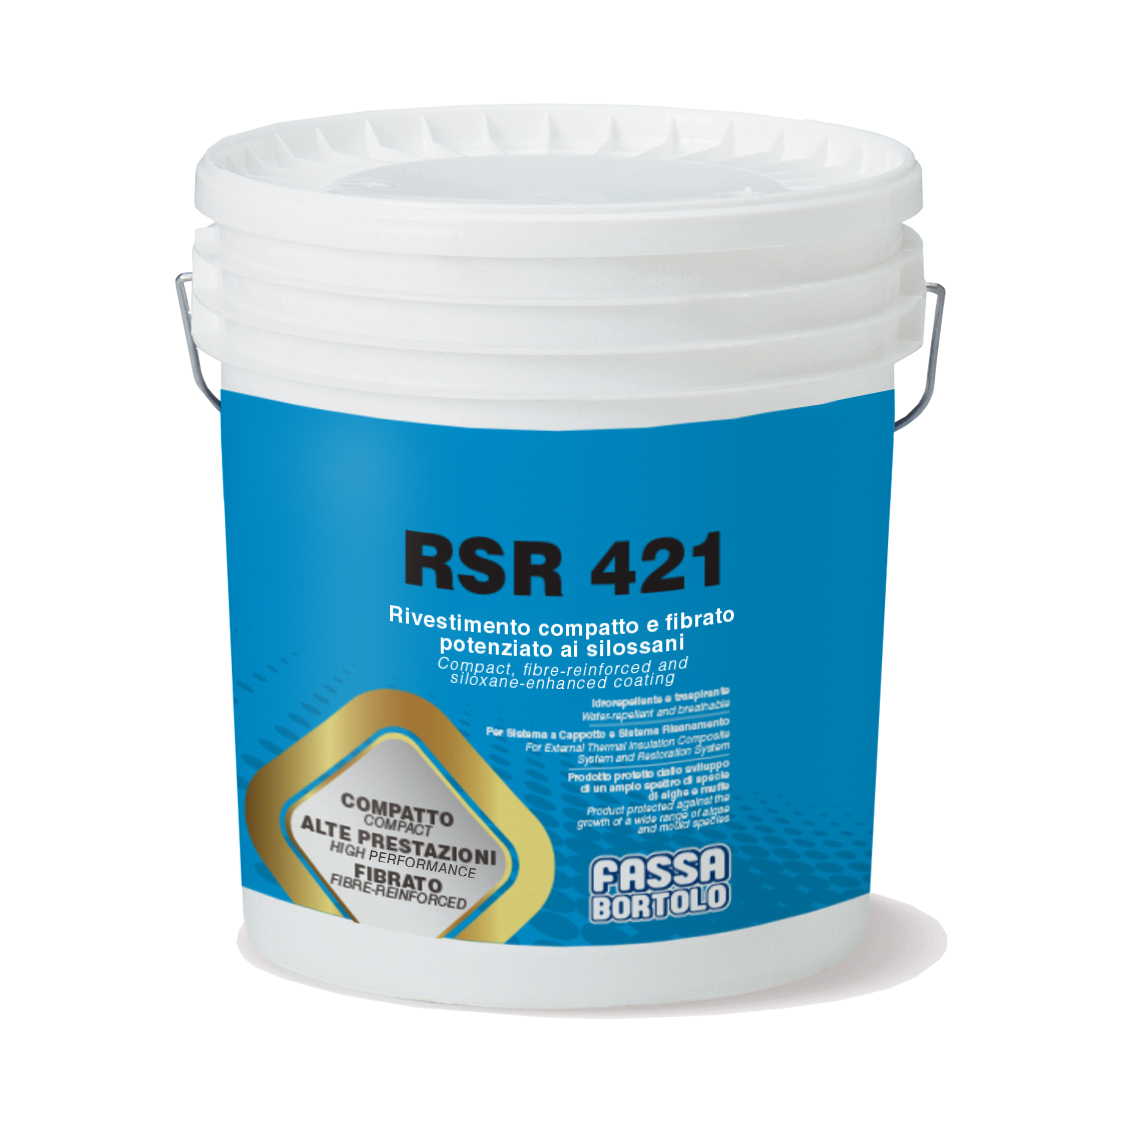 RSR 421: Rivestimento compatto e fibrato potenziato ai silossani